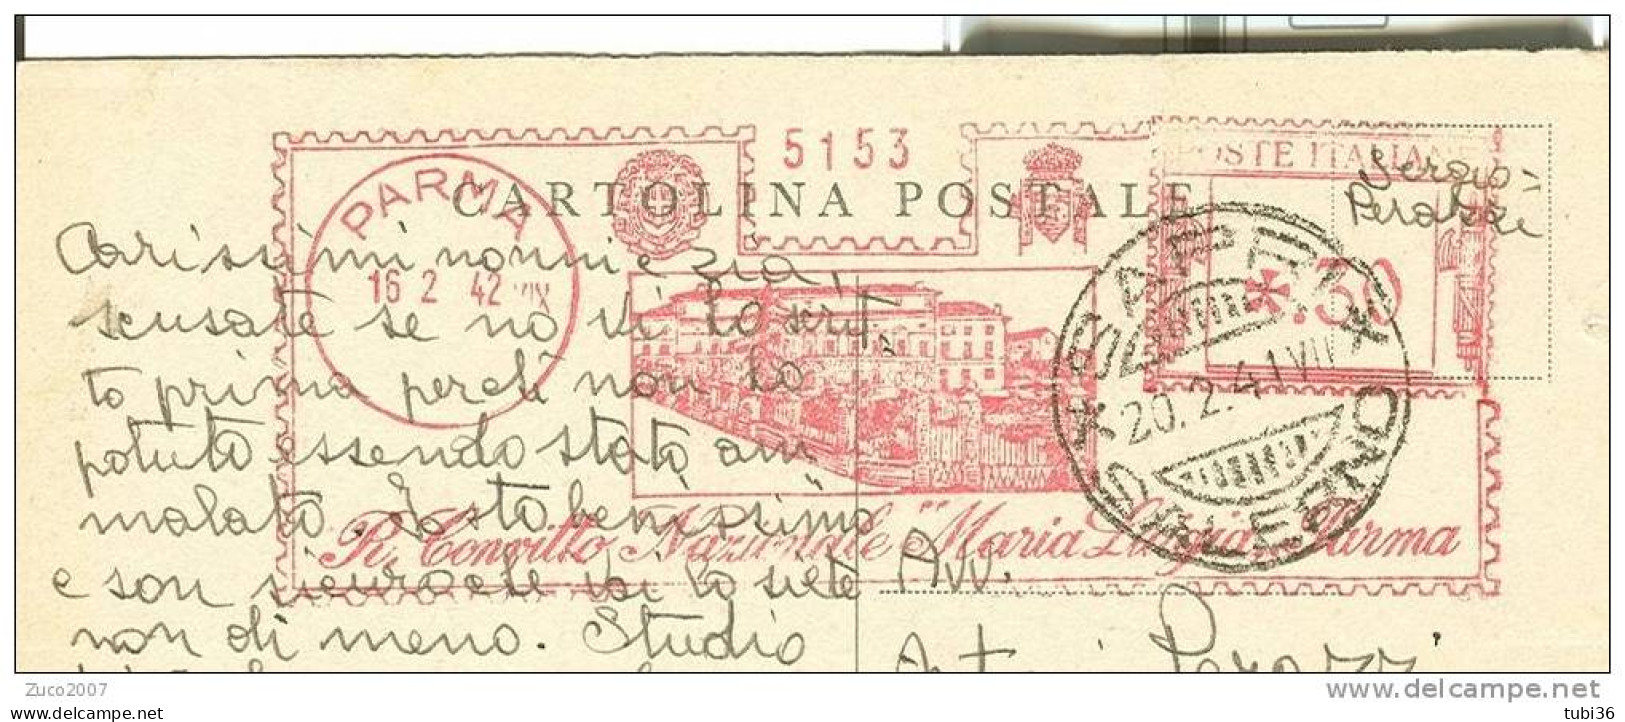 R. CONVITTO NAZIONALE MARIA LUIGIA PARMA - VIAGGIATO 1942 - TIMBRO ROSSO  16/2/1942 DA PARMA A SAPRI (SALERNO). - Reklame